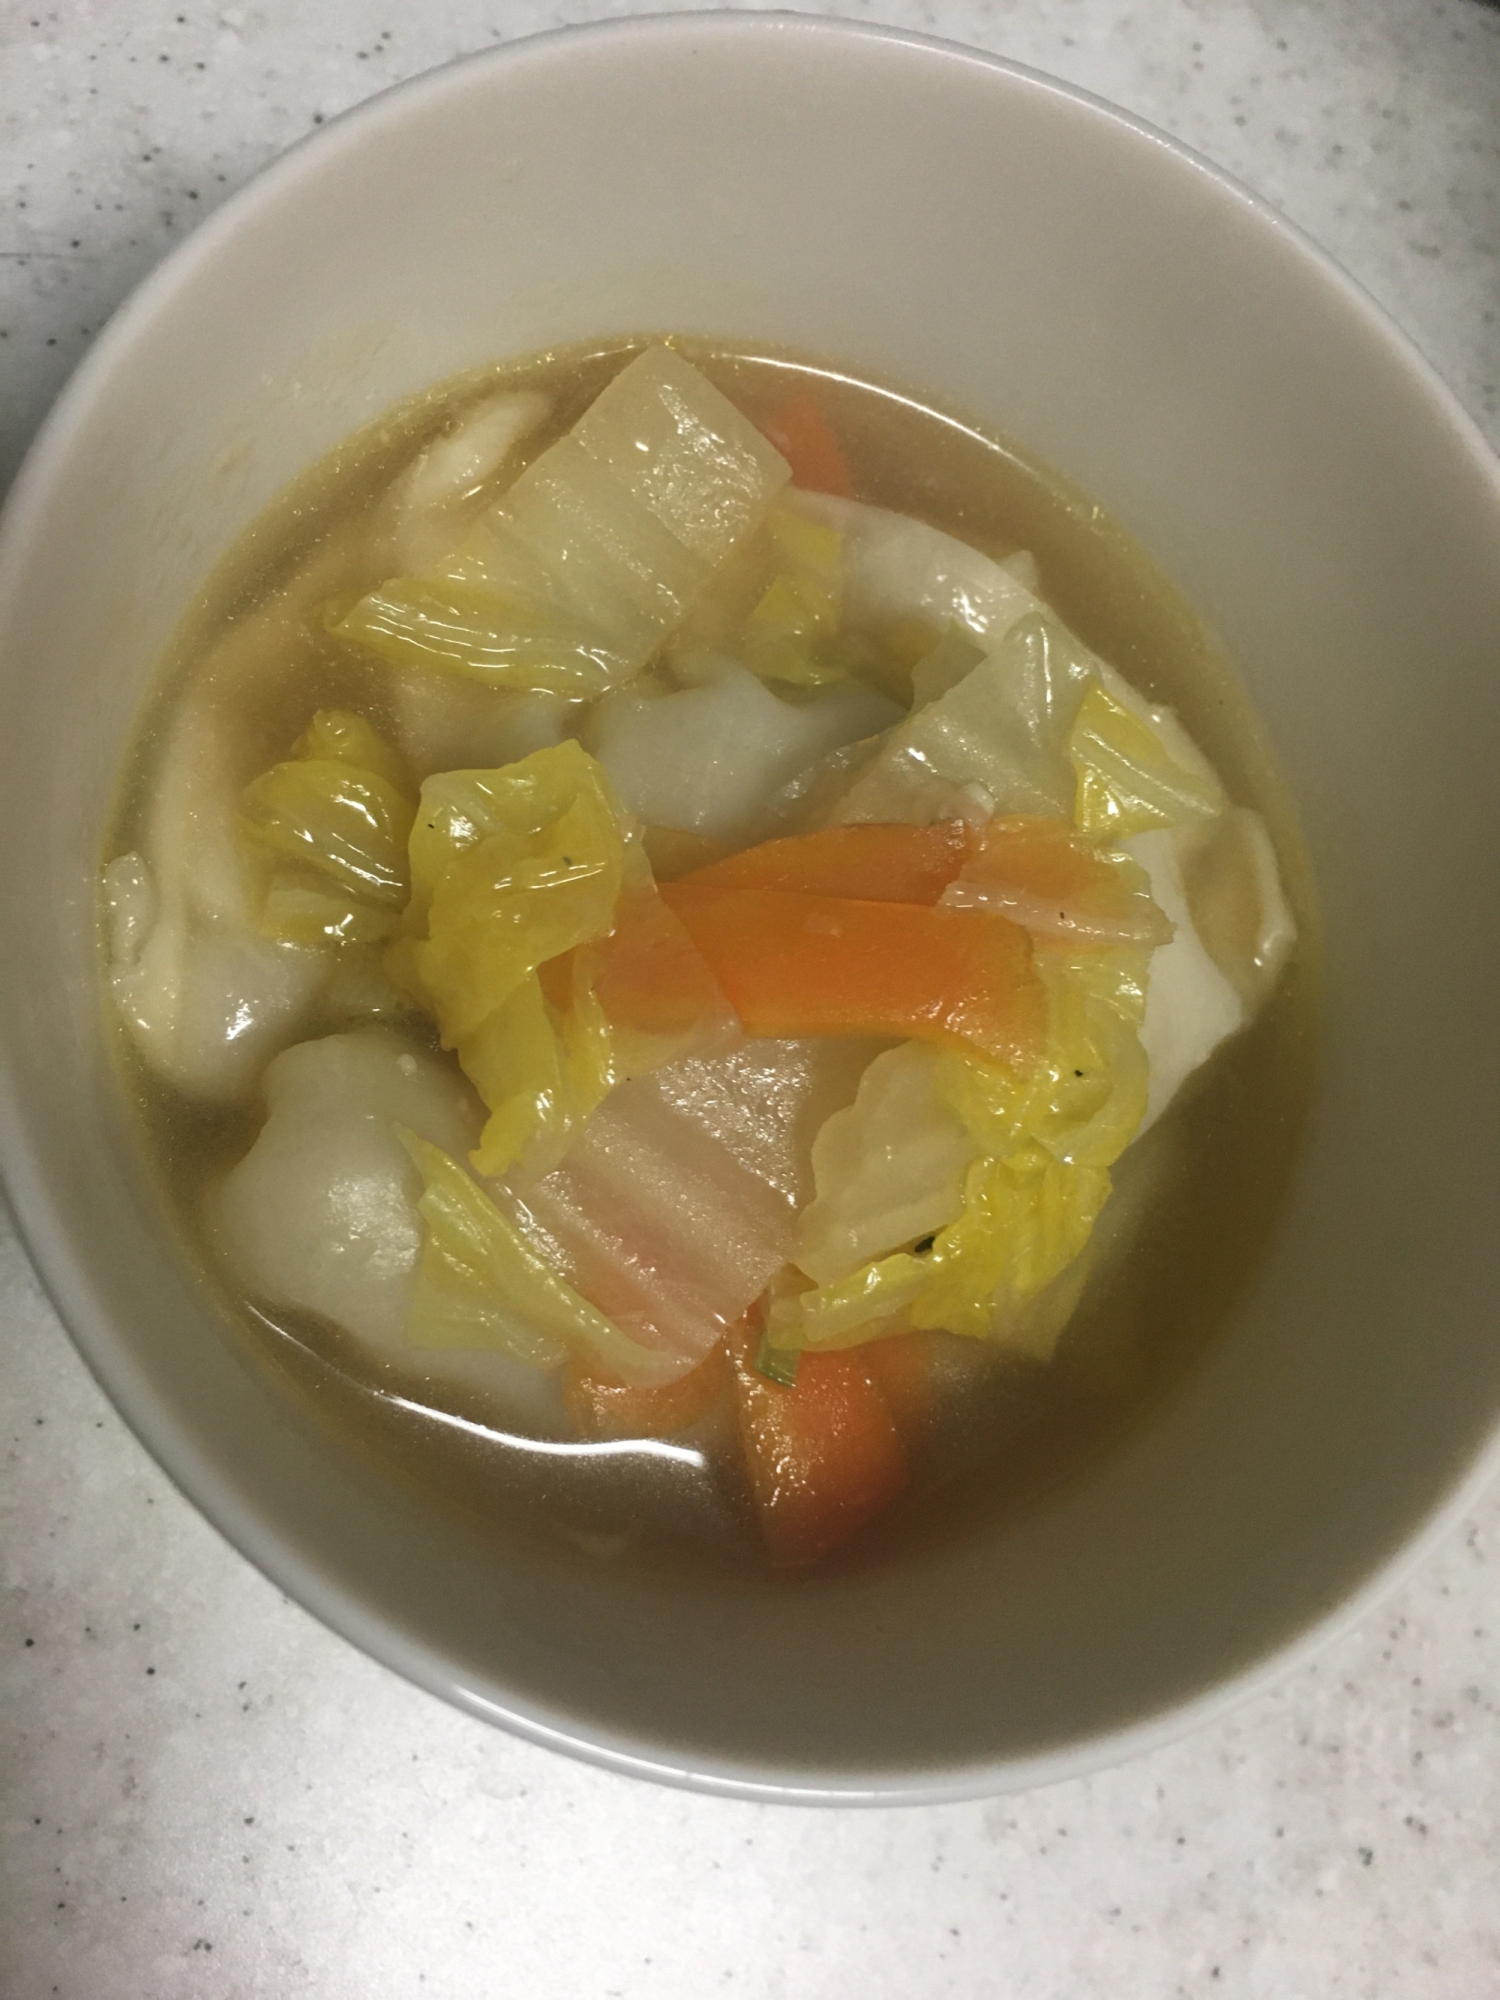 チルド餃子で中華スープ